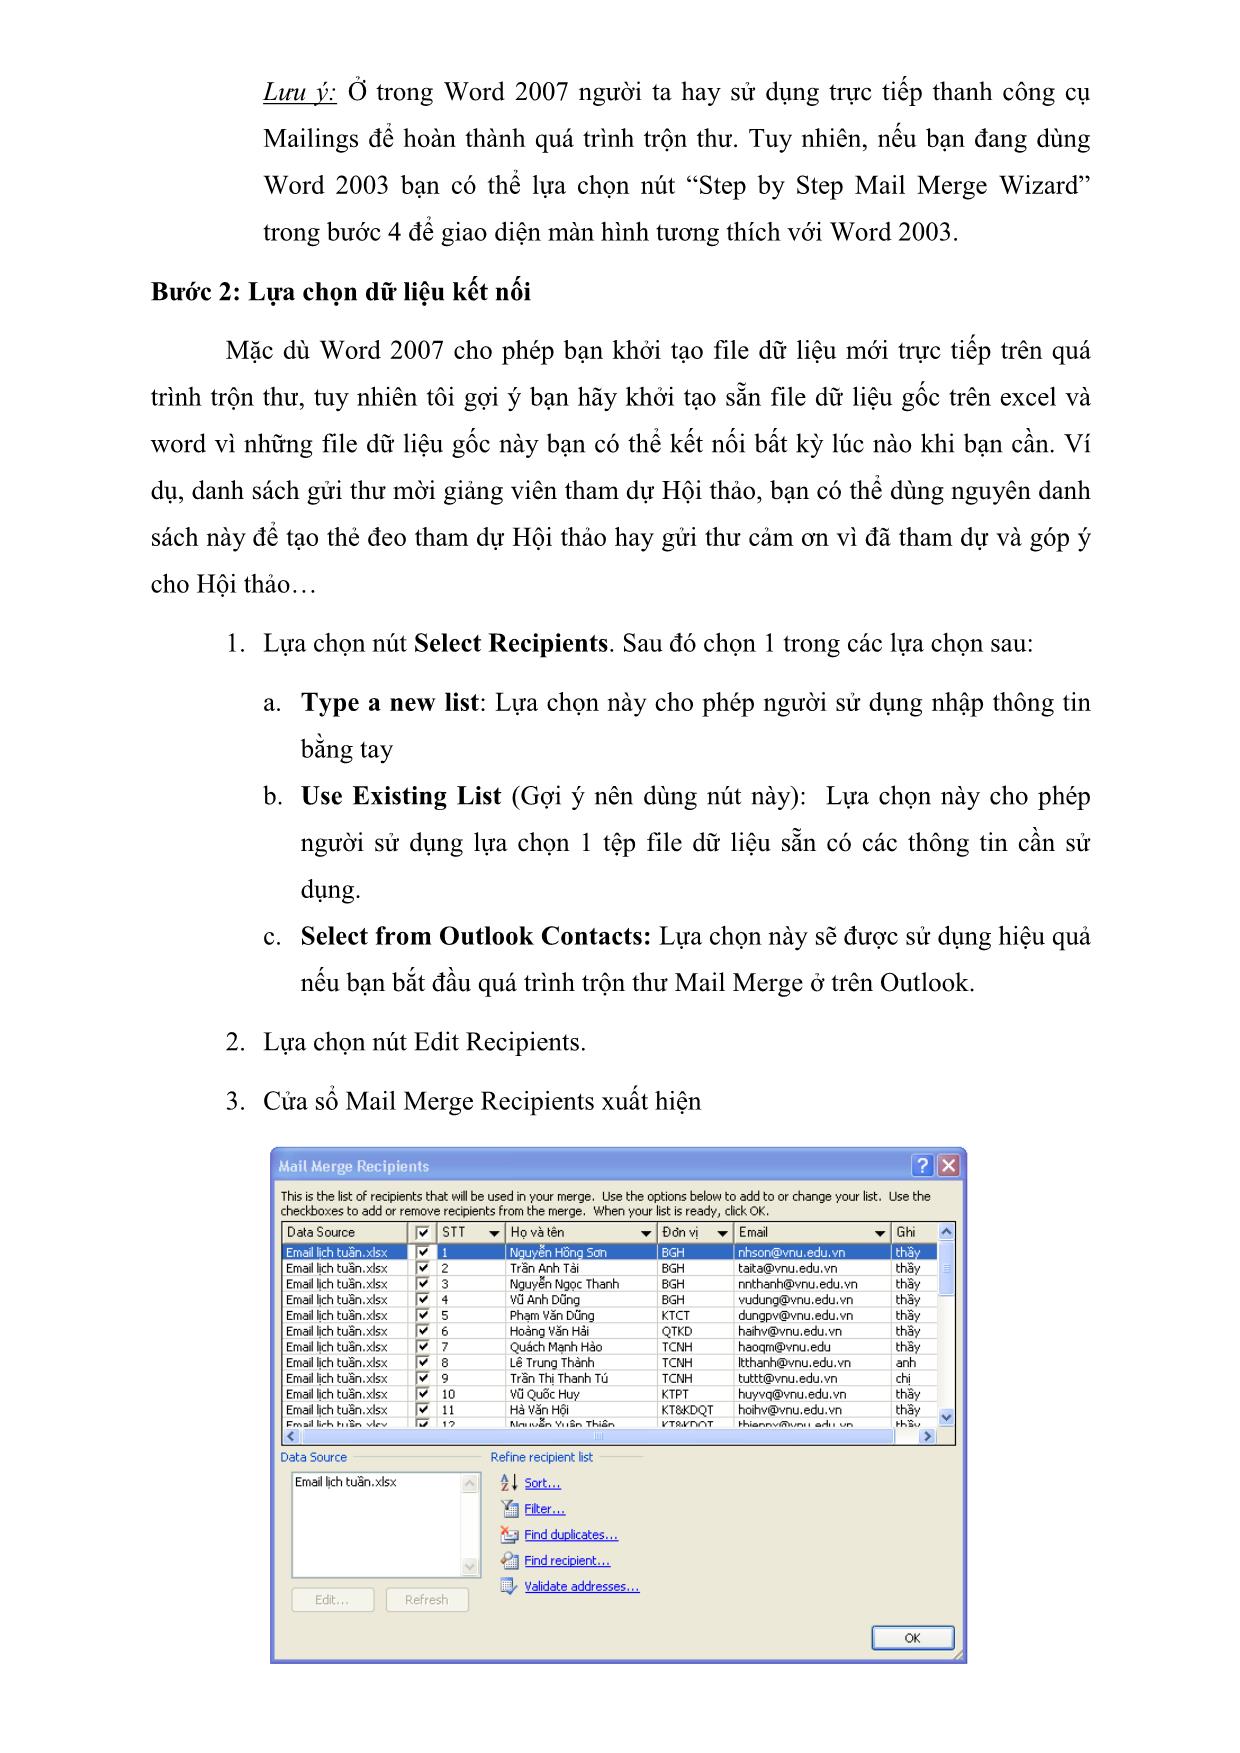 Tài liệu hướng dẫn trộn thư cho word 2007-2010 (mail merge) trang 5